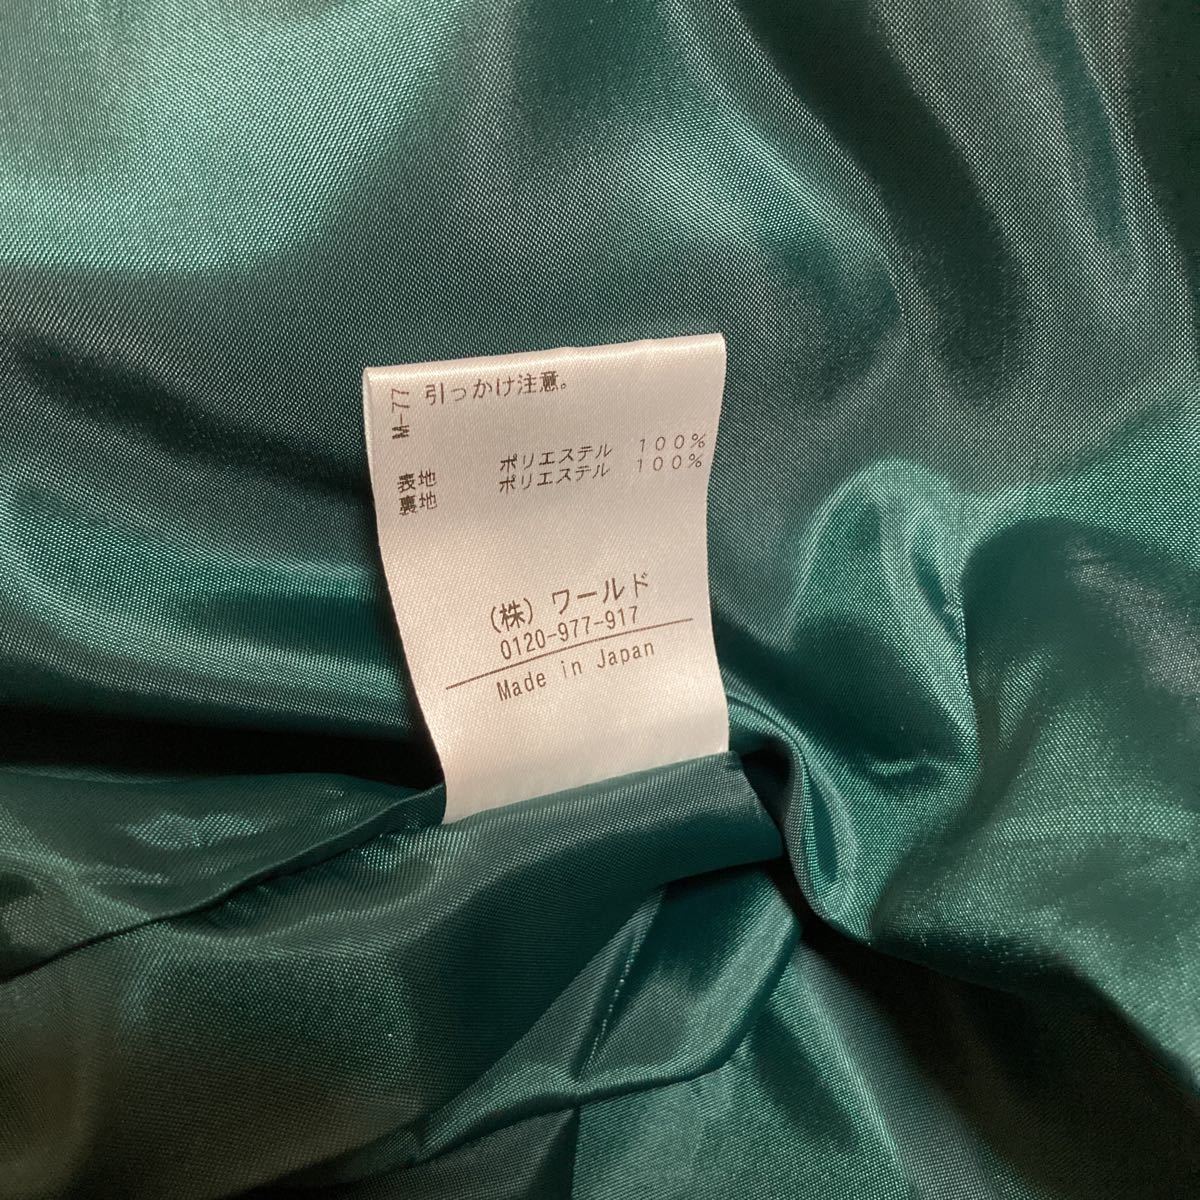  новый товар  M 38 ... anatelier  мир  A  линия  юбка   зеленый  зеленый  ... зеленый  ... зеленый  Зима   весна    осень    юбка  ... длина  ... редкий  юбка 